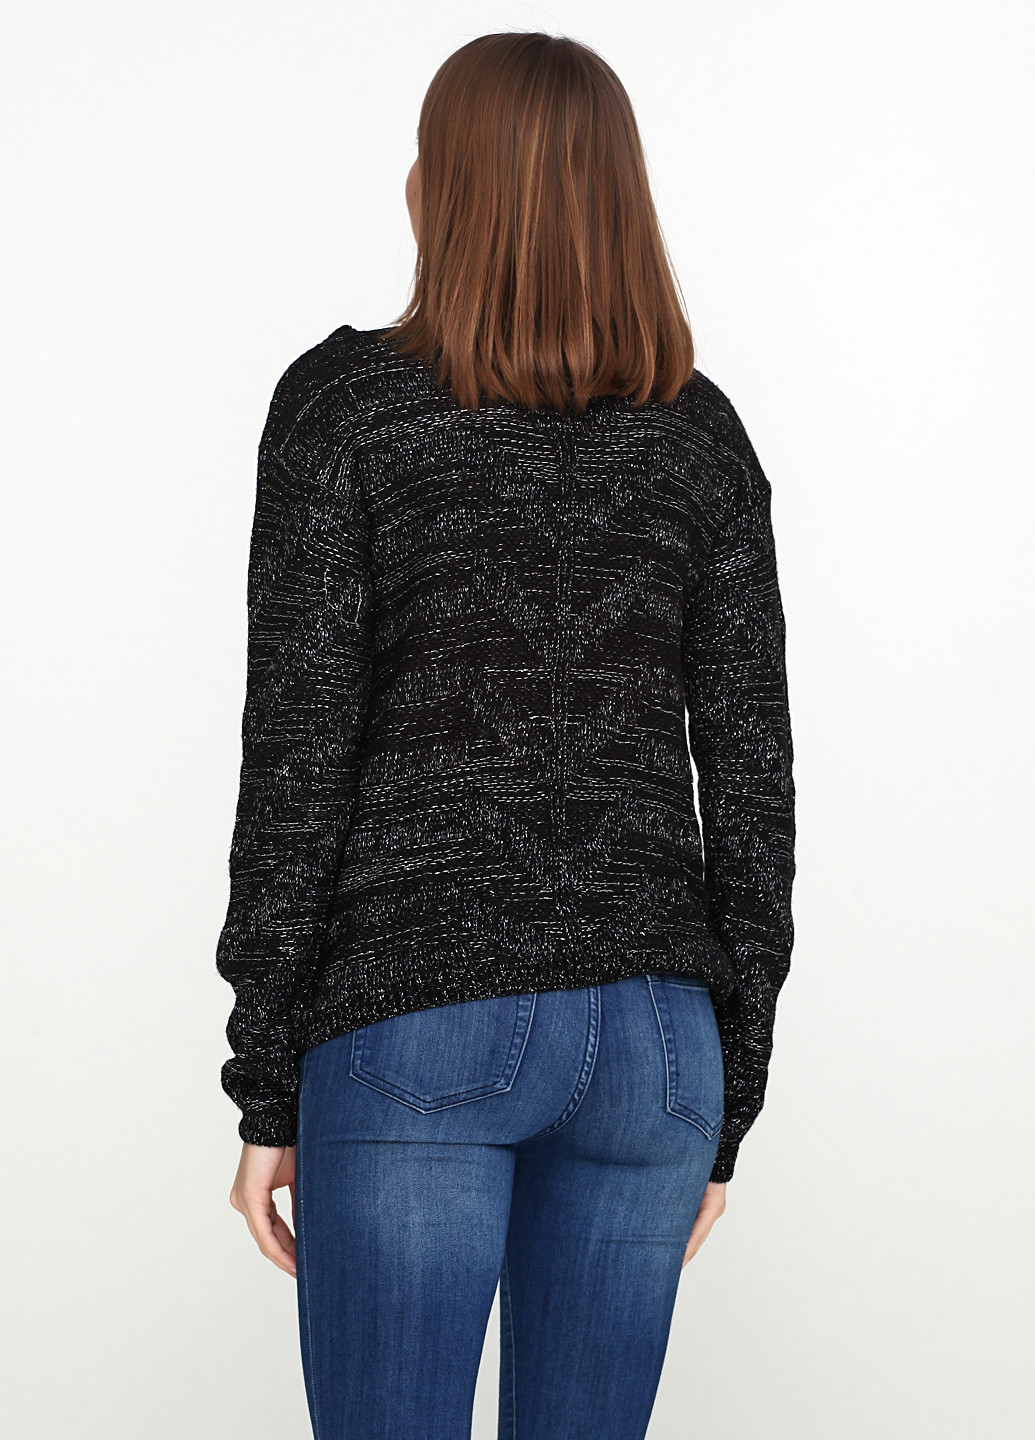 Чорний демісезонний пуловер пуловер Coupage №5